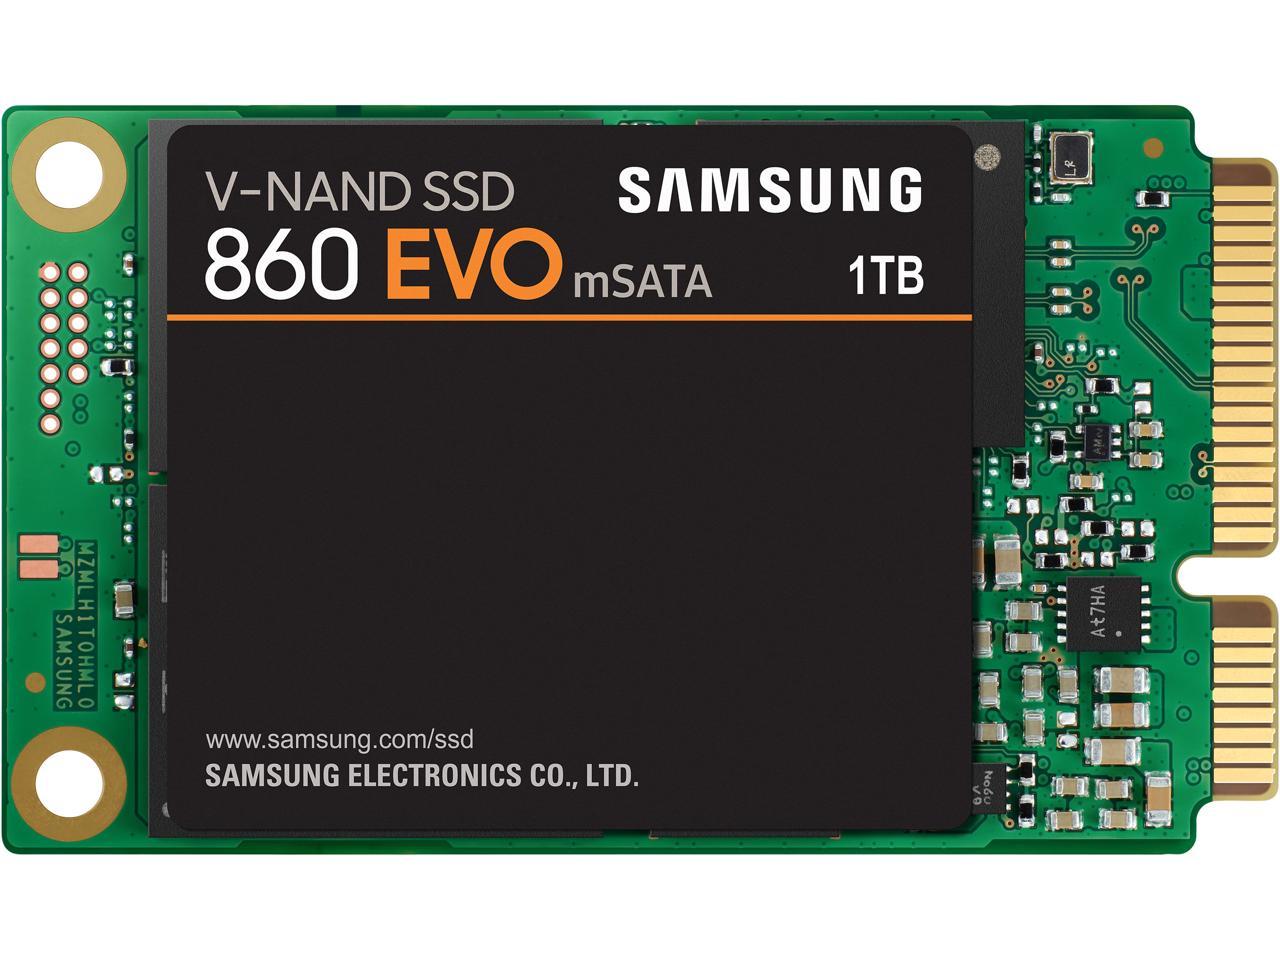 SAMSUNG 860 EVO Series mSATA 1TB SATA III V-NAND 3-bit MLC 